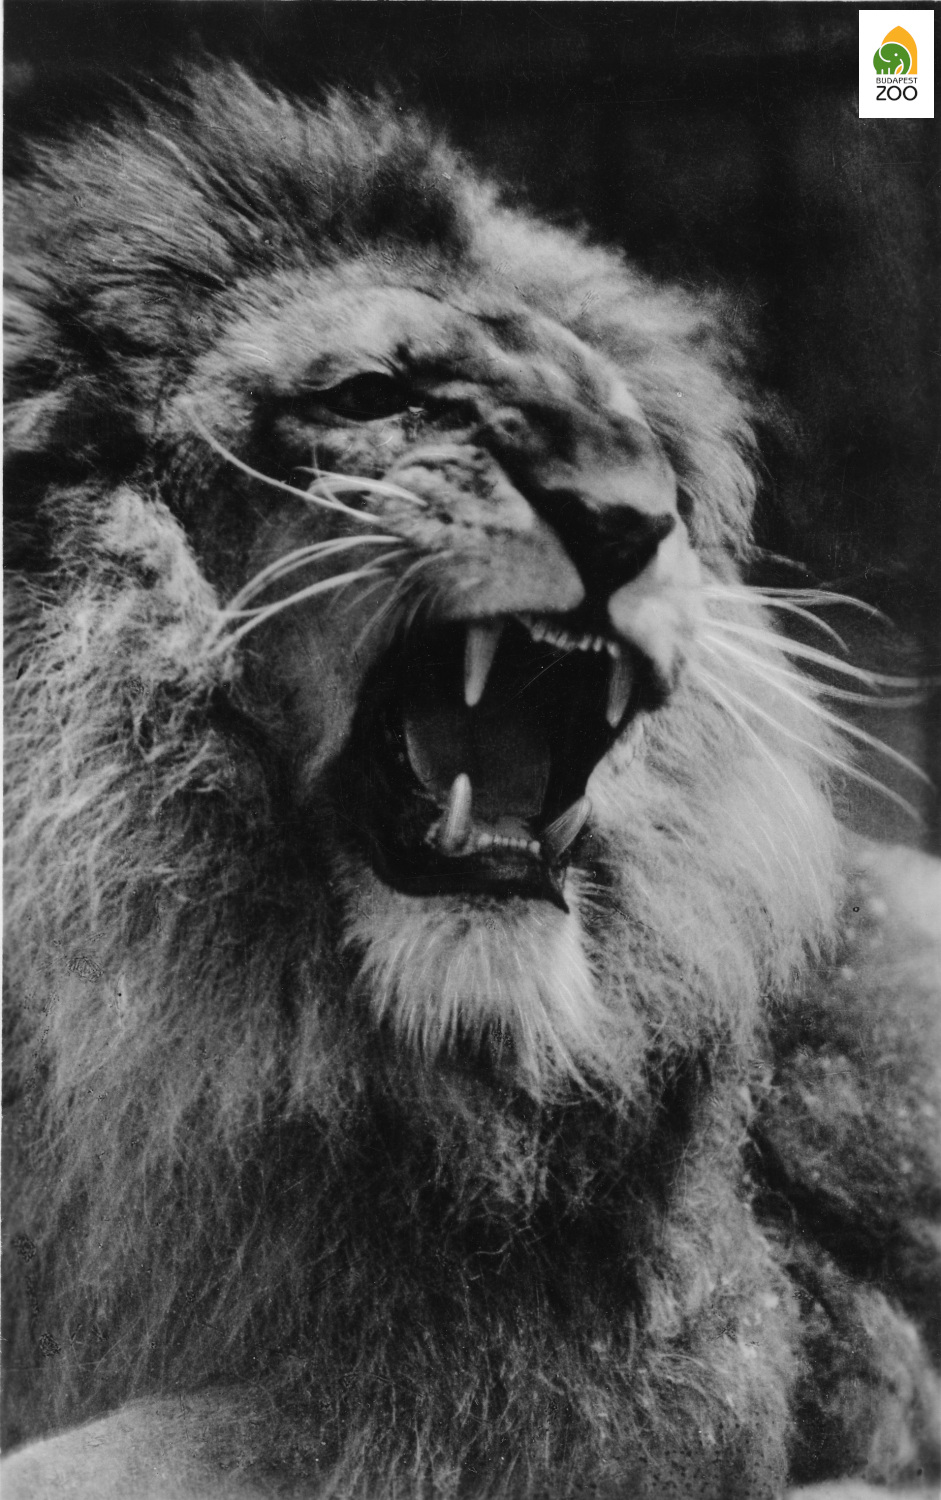 07 - Hölzel Gyula koszorús fényképészmester, az Állatkert egykori fotósának híres oroszlán portréja az 1950-es évekből, amellyel még díjat is nyert